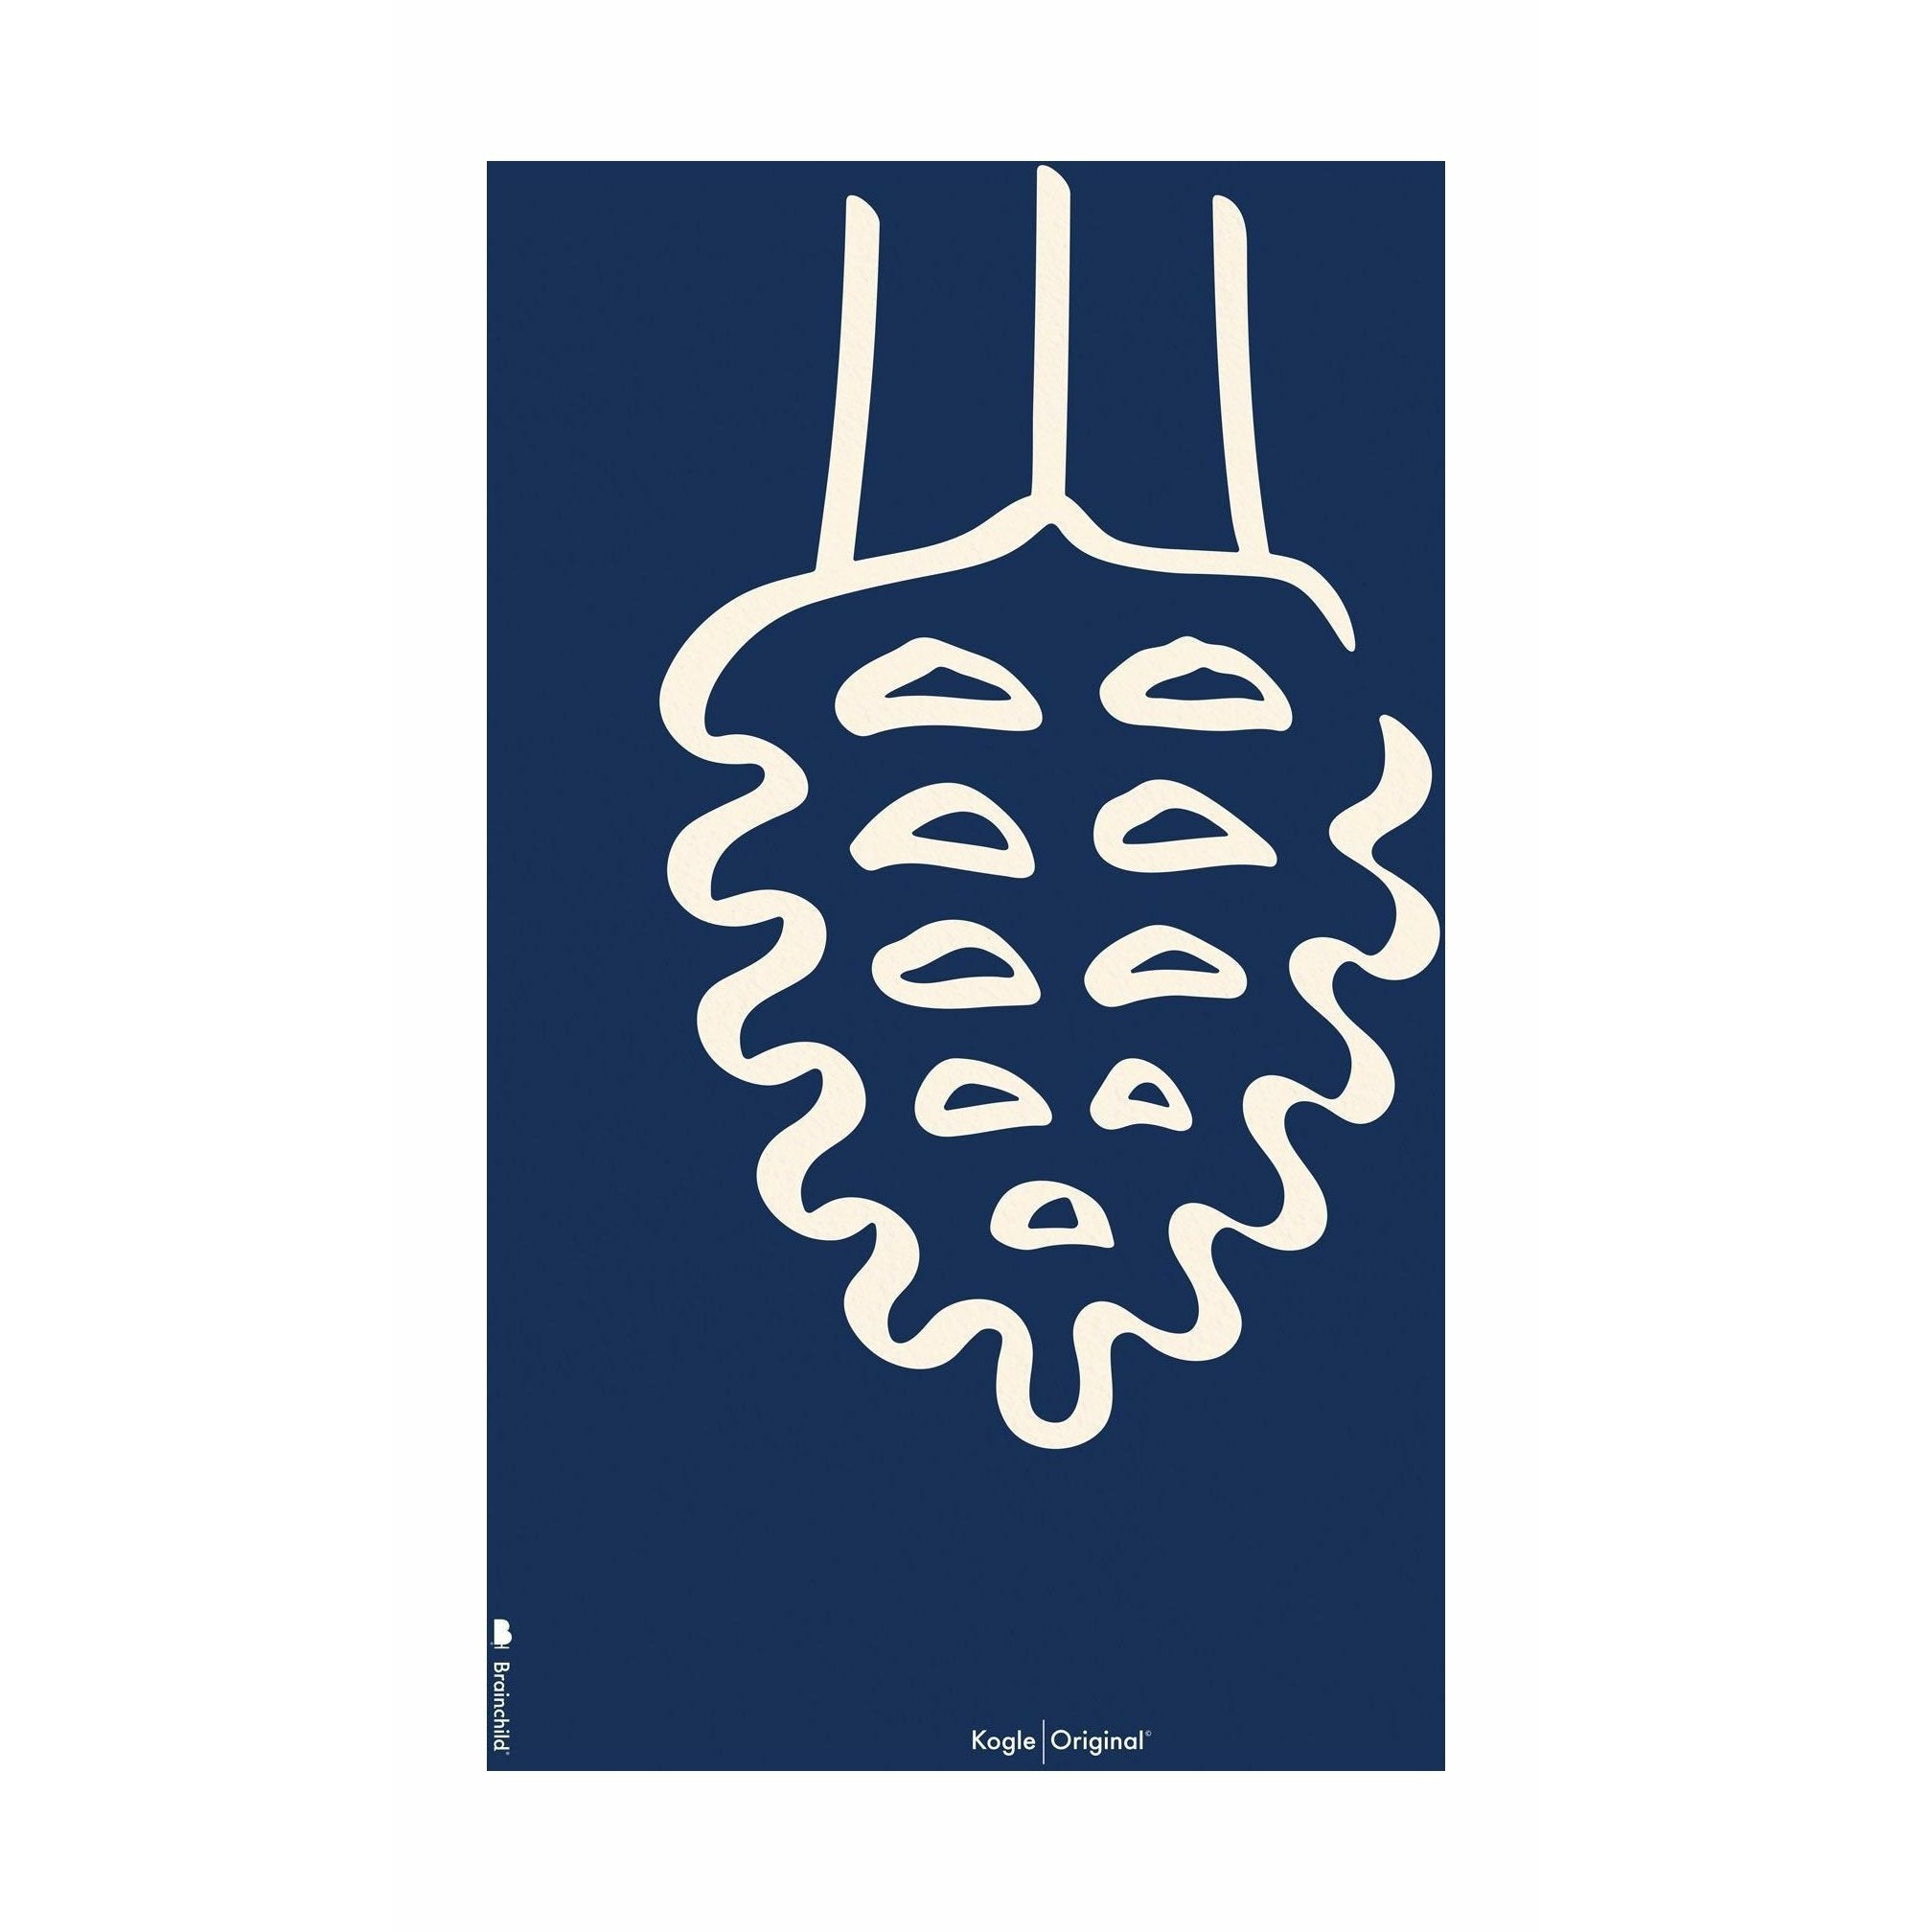 Poster della linea del cono di pino da frutto senza fotogramma A5, sfondo blu